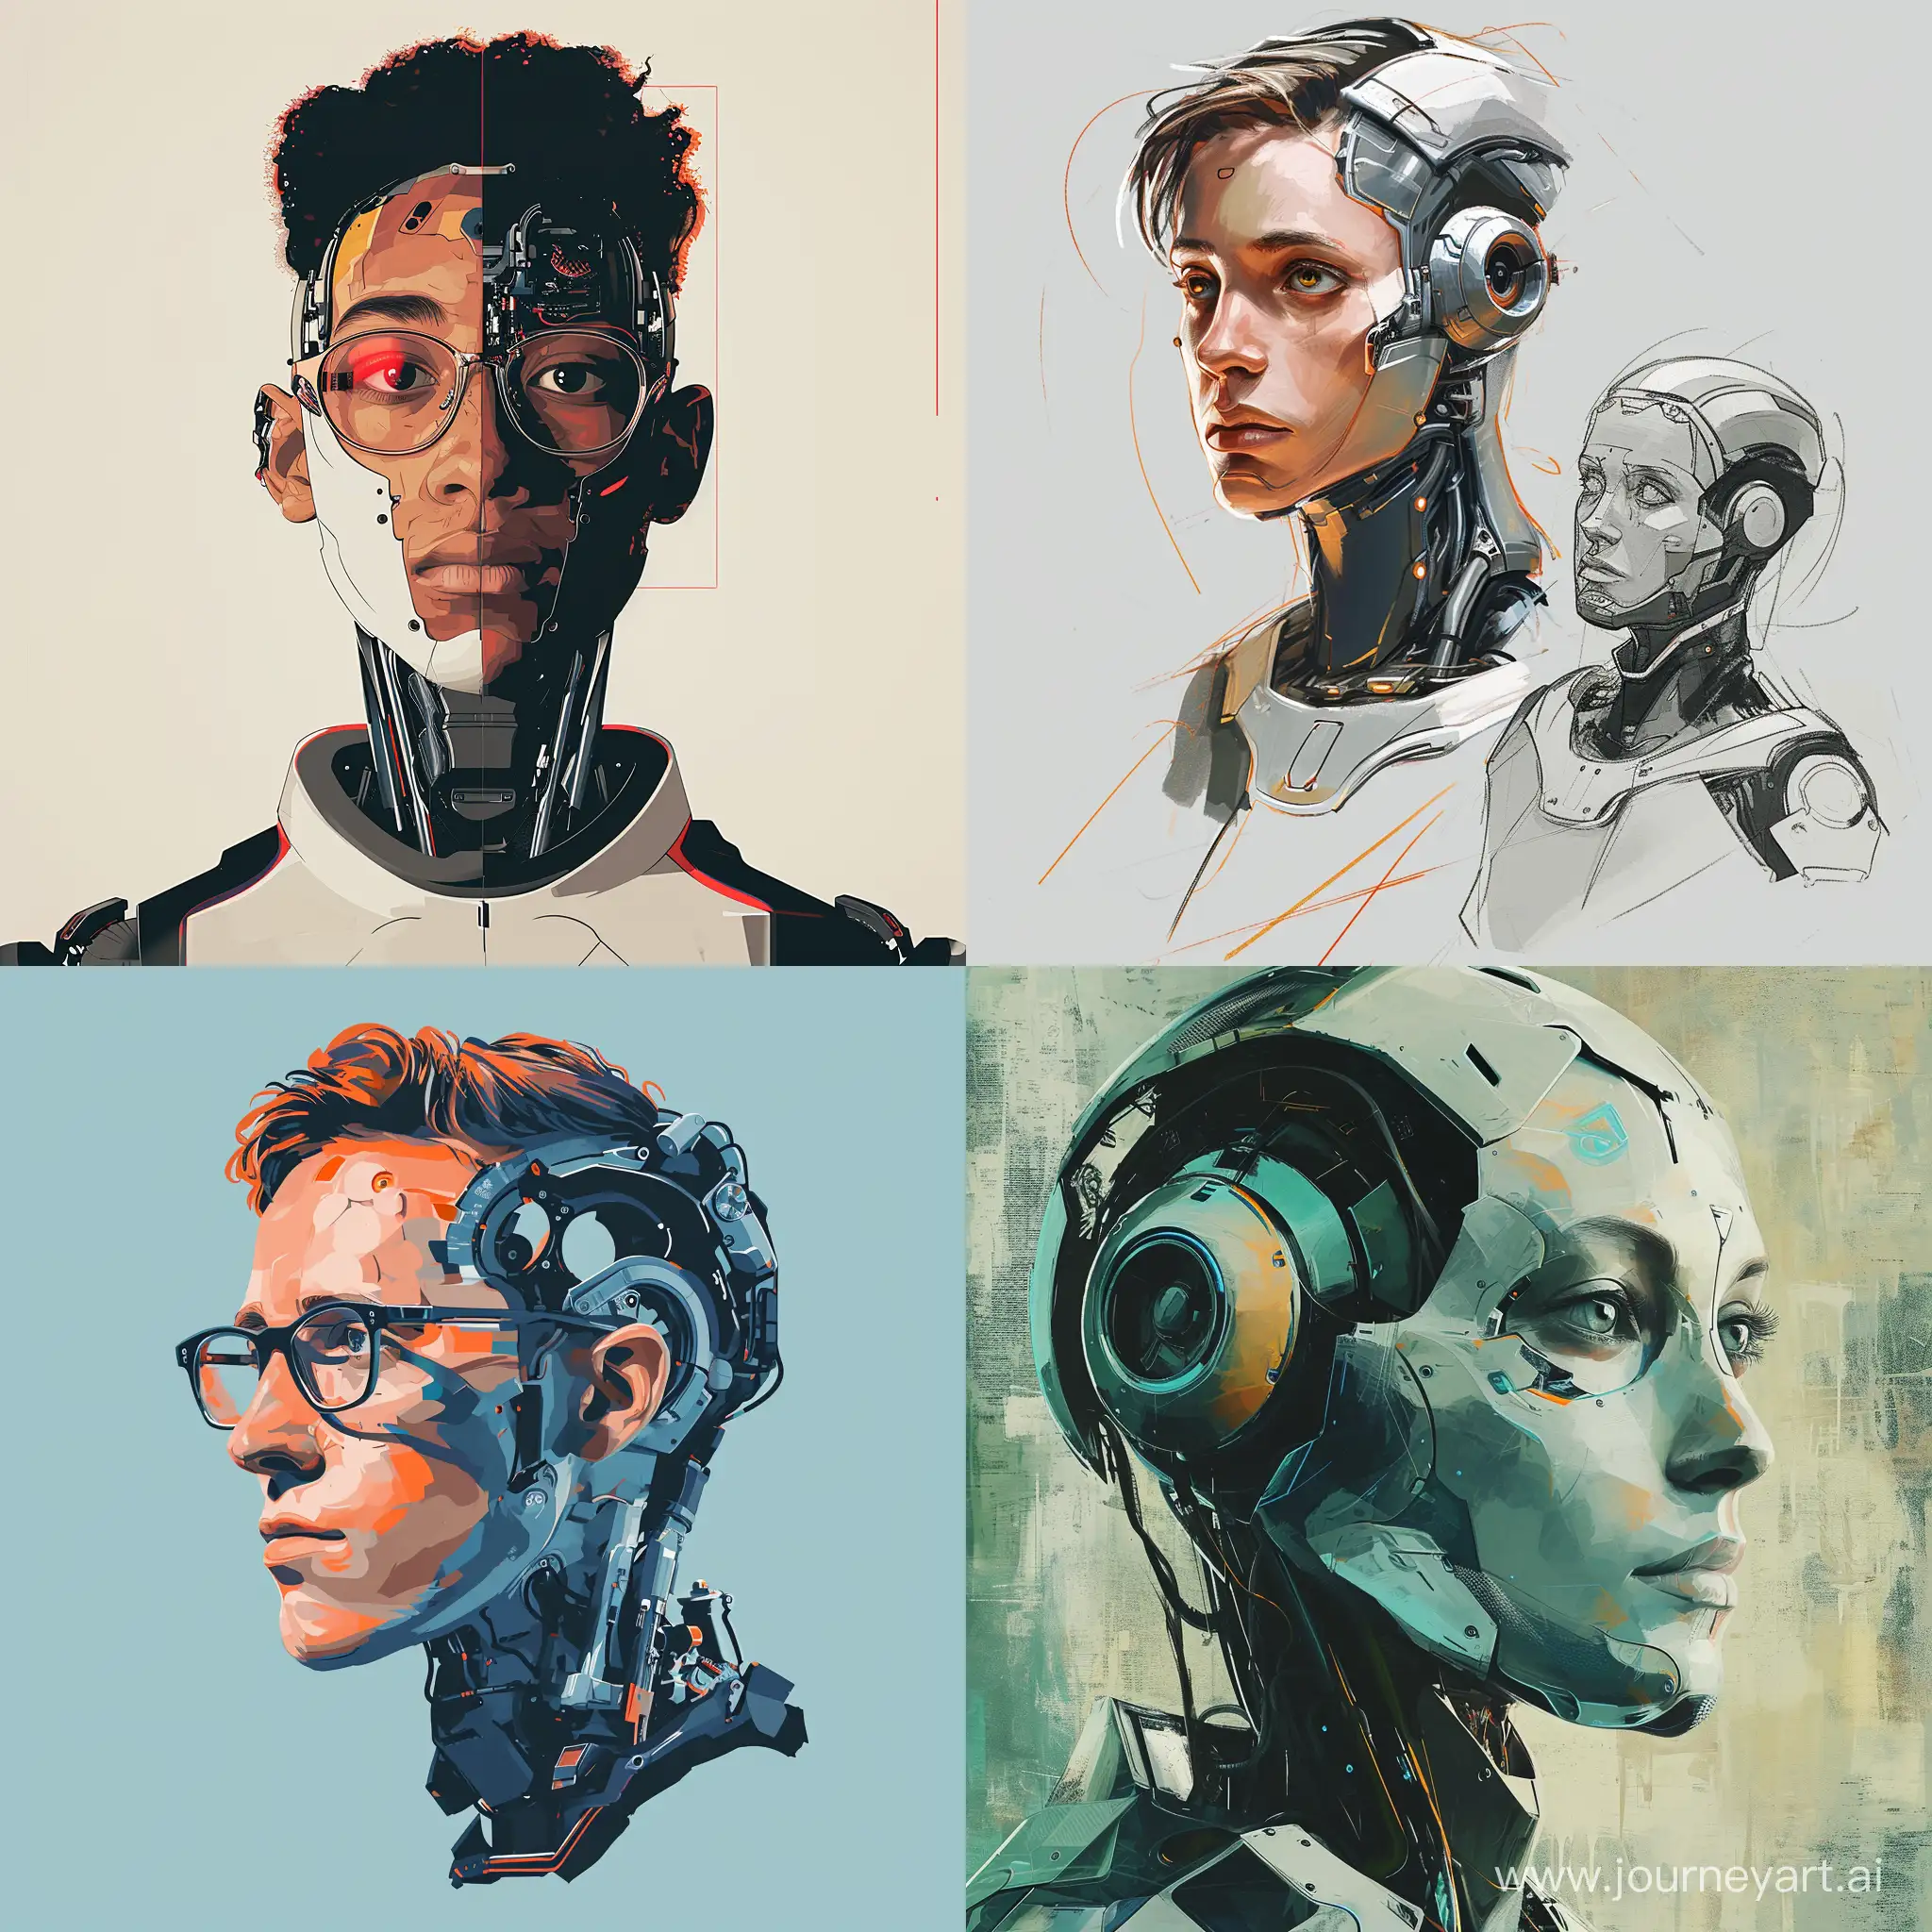 Futuristic-RobotInspired-Portrait